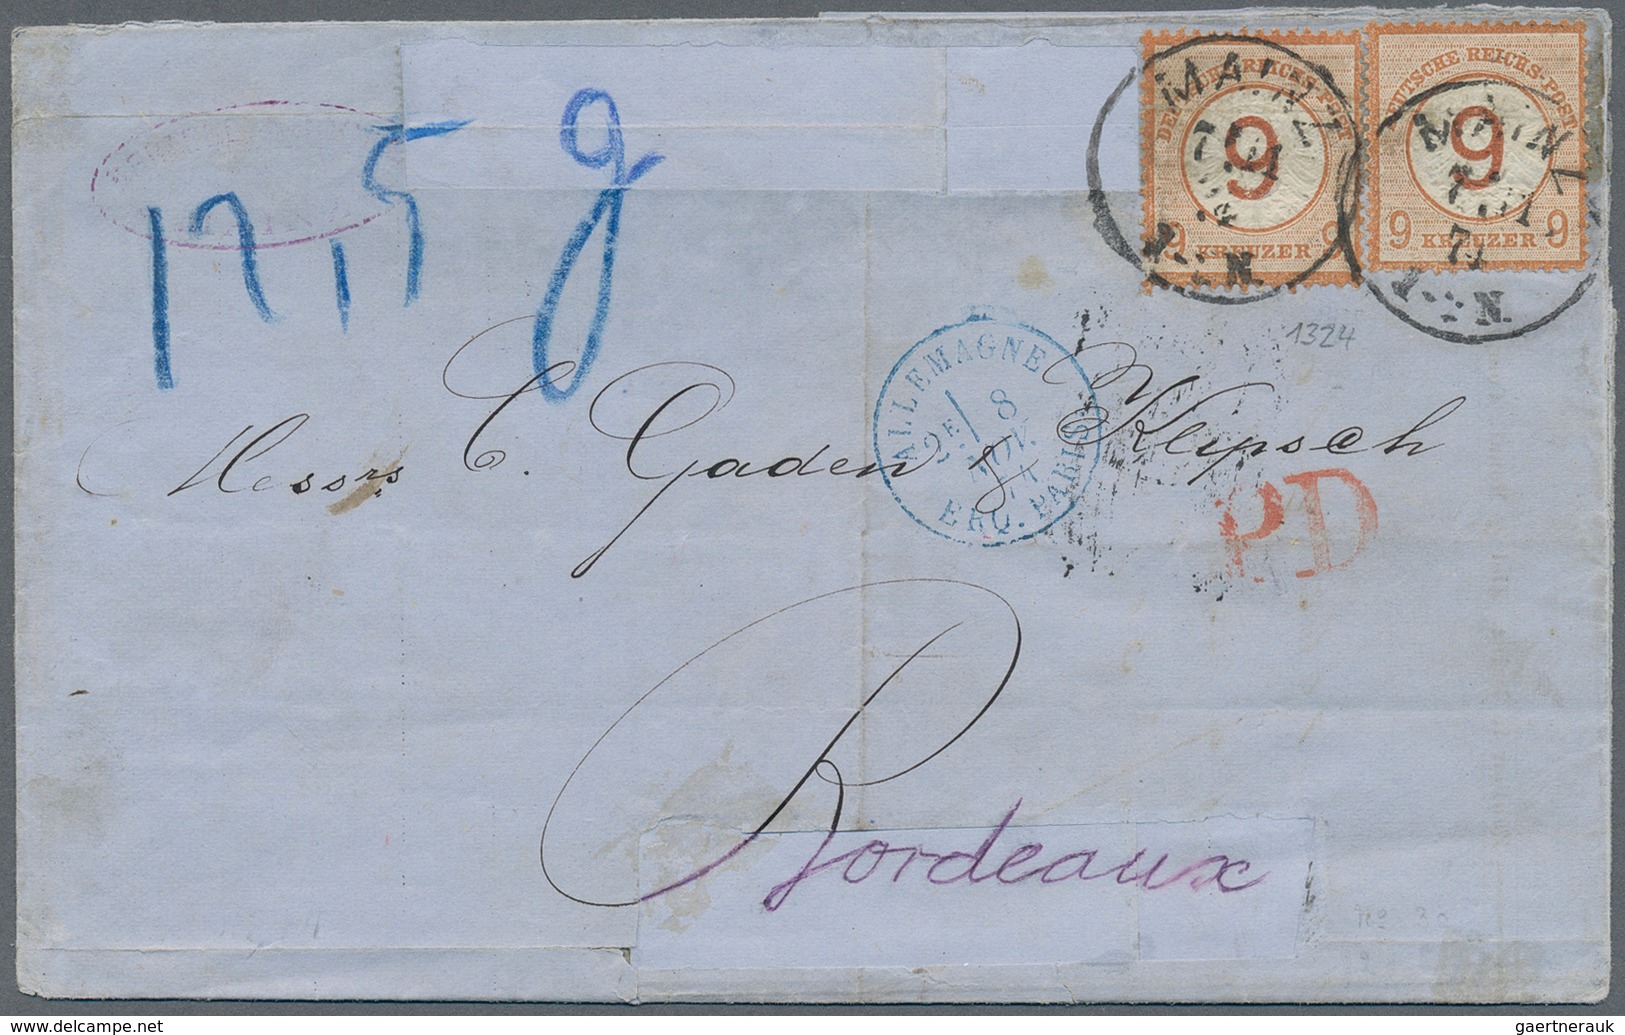 31410 Deutsches Reich: 1872/1900 (ca.), schöner Posten mit ca. 130 Belegen, ab den Brustschilden bis hin z